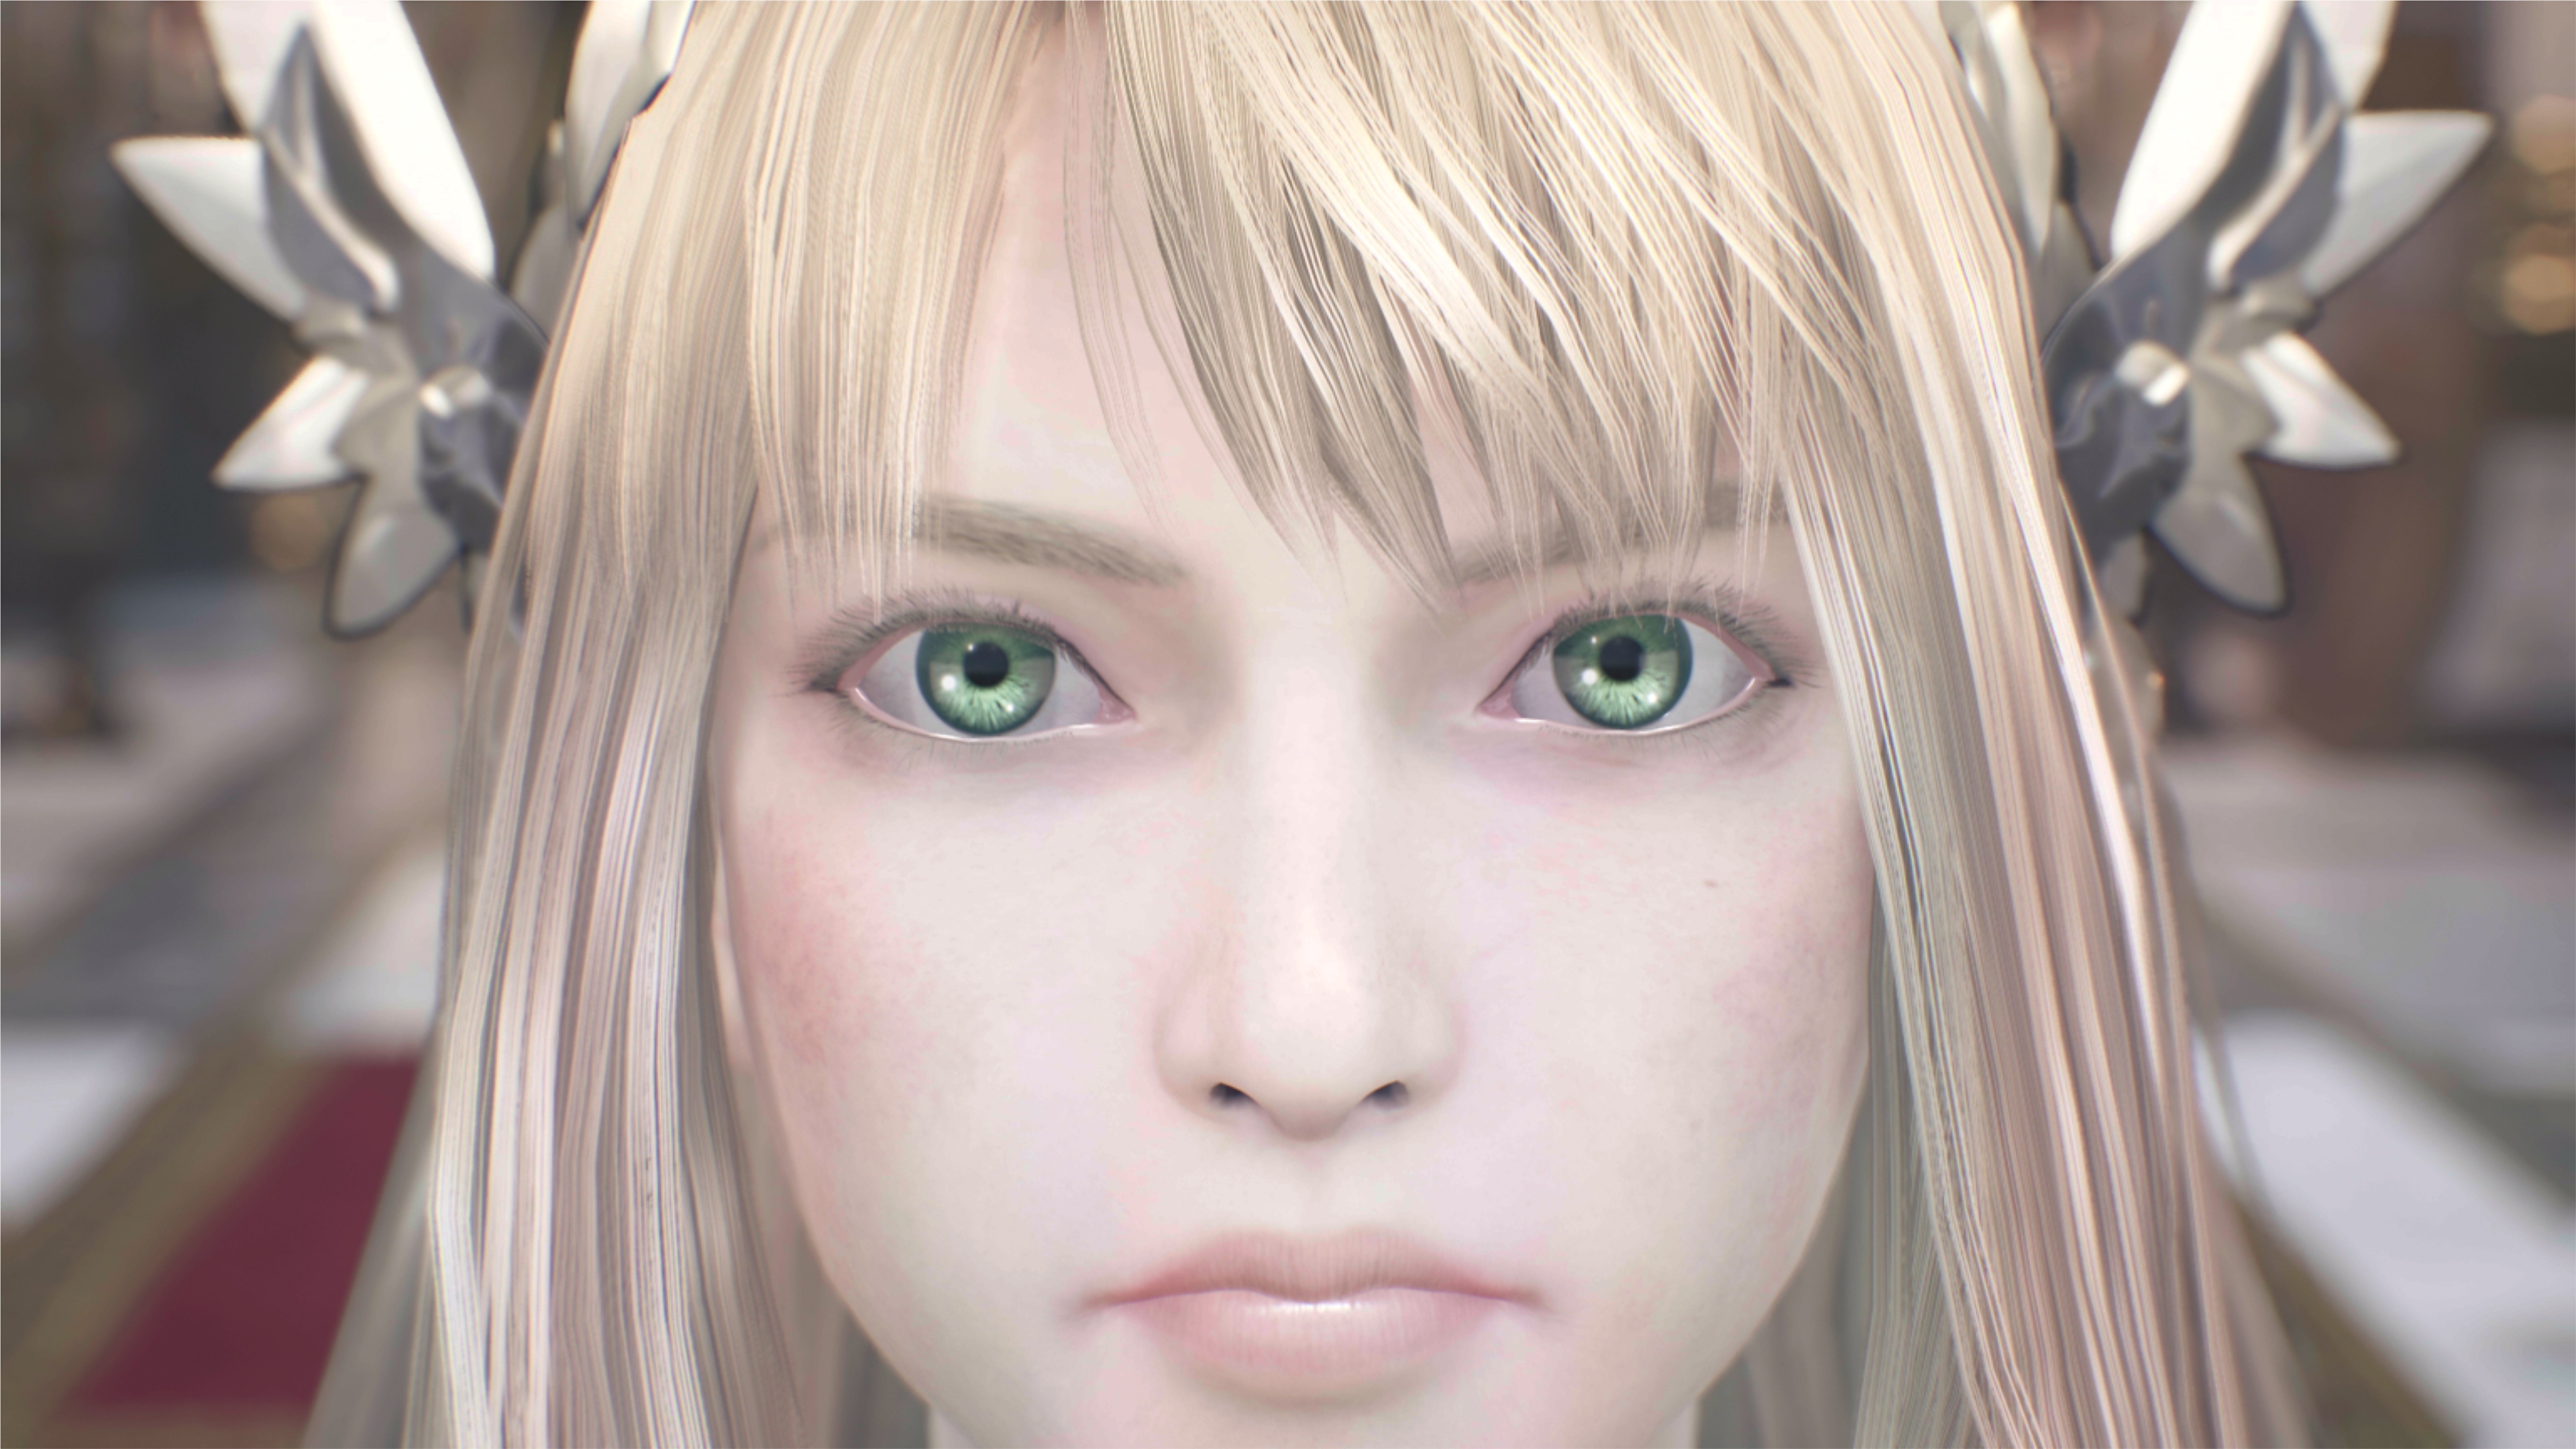 لقطة شاشة للعبة Valkyrie Elysium تعرض صورة مقربة لشخصية بشعر أحمر وعيون خضراء